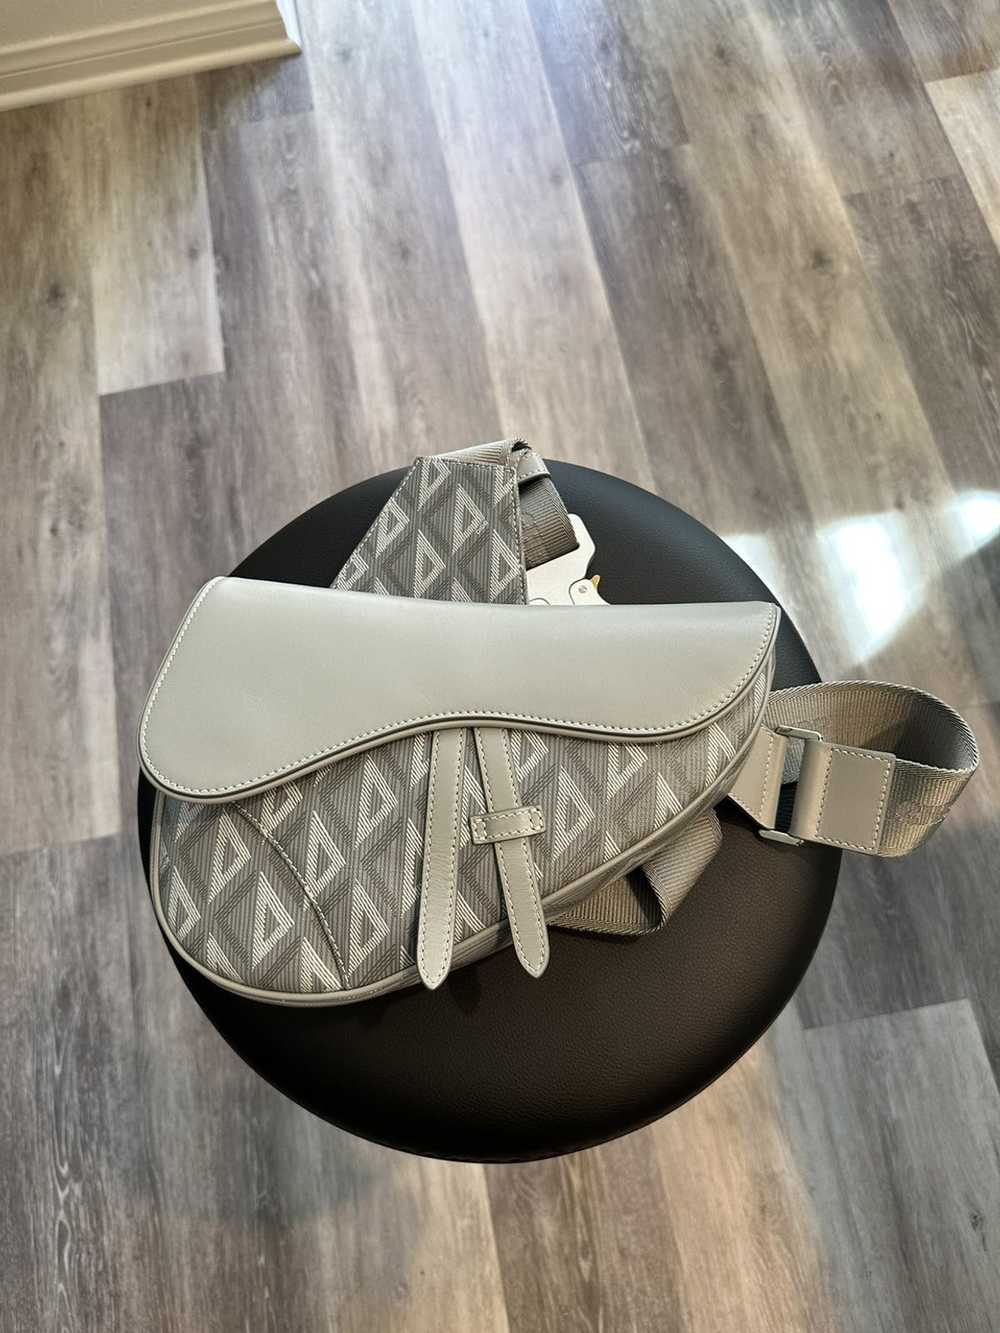 Dior Saddle bag - image 1